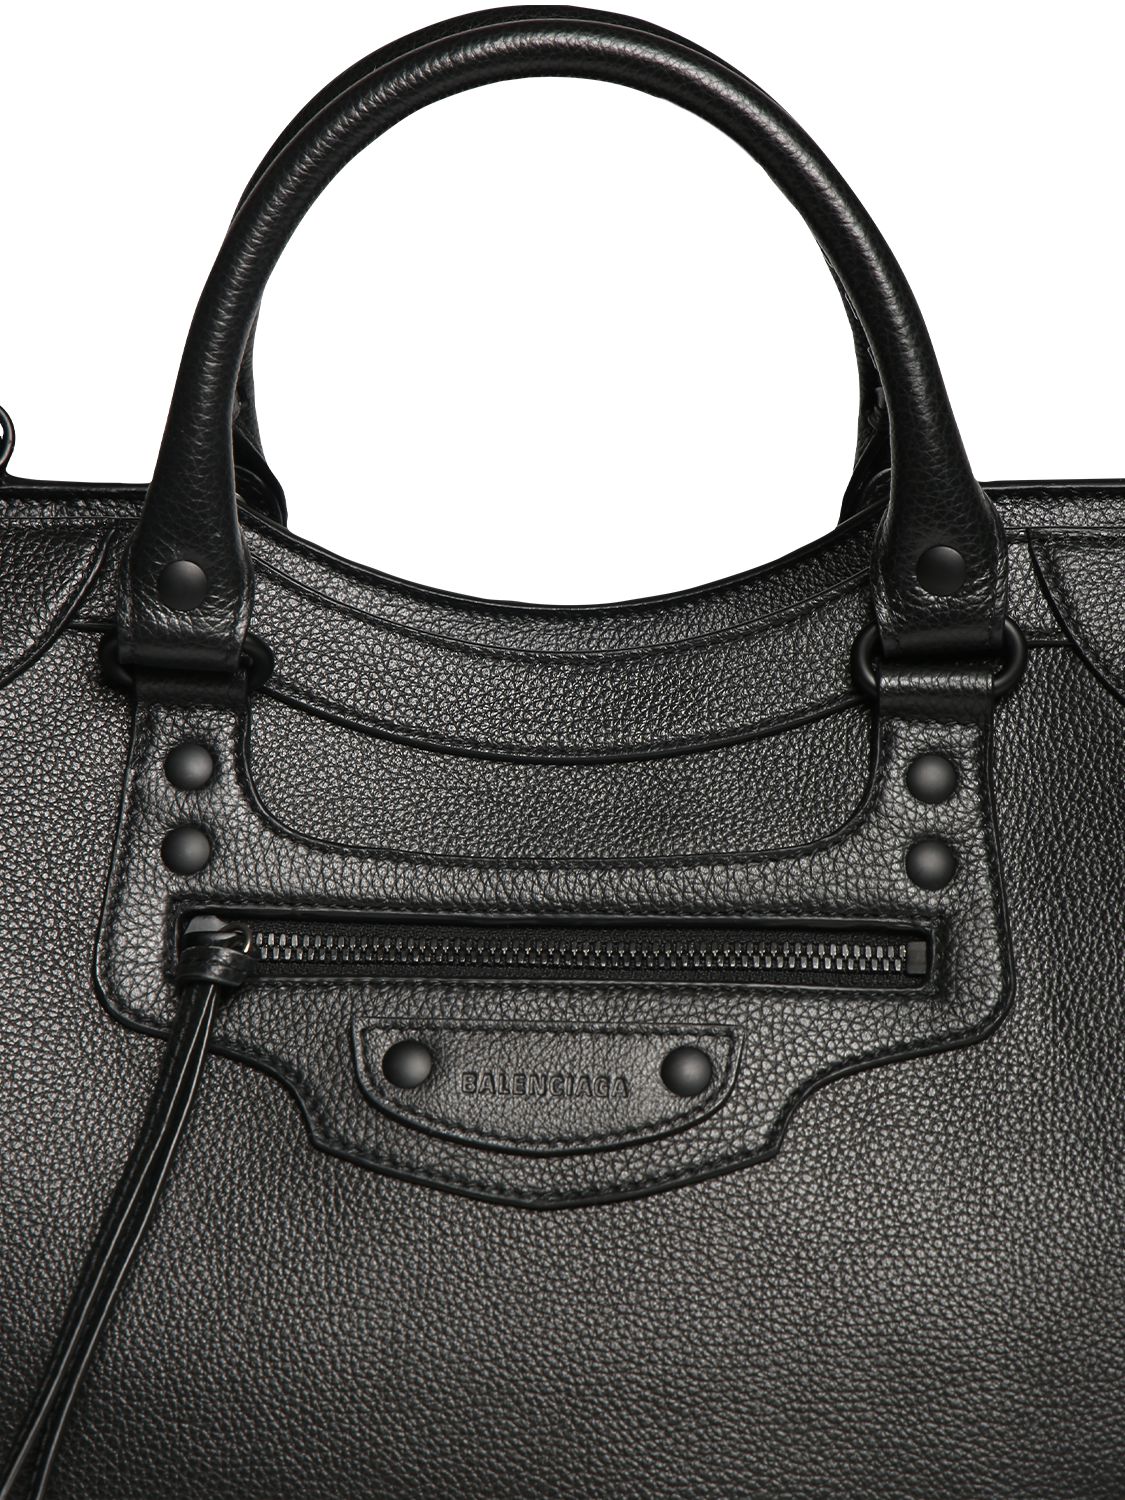 Neo Classic City Small Leather Bag By Balenciaga, Moda Operandi